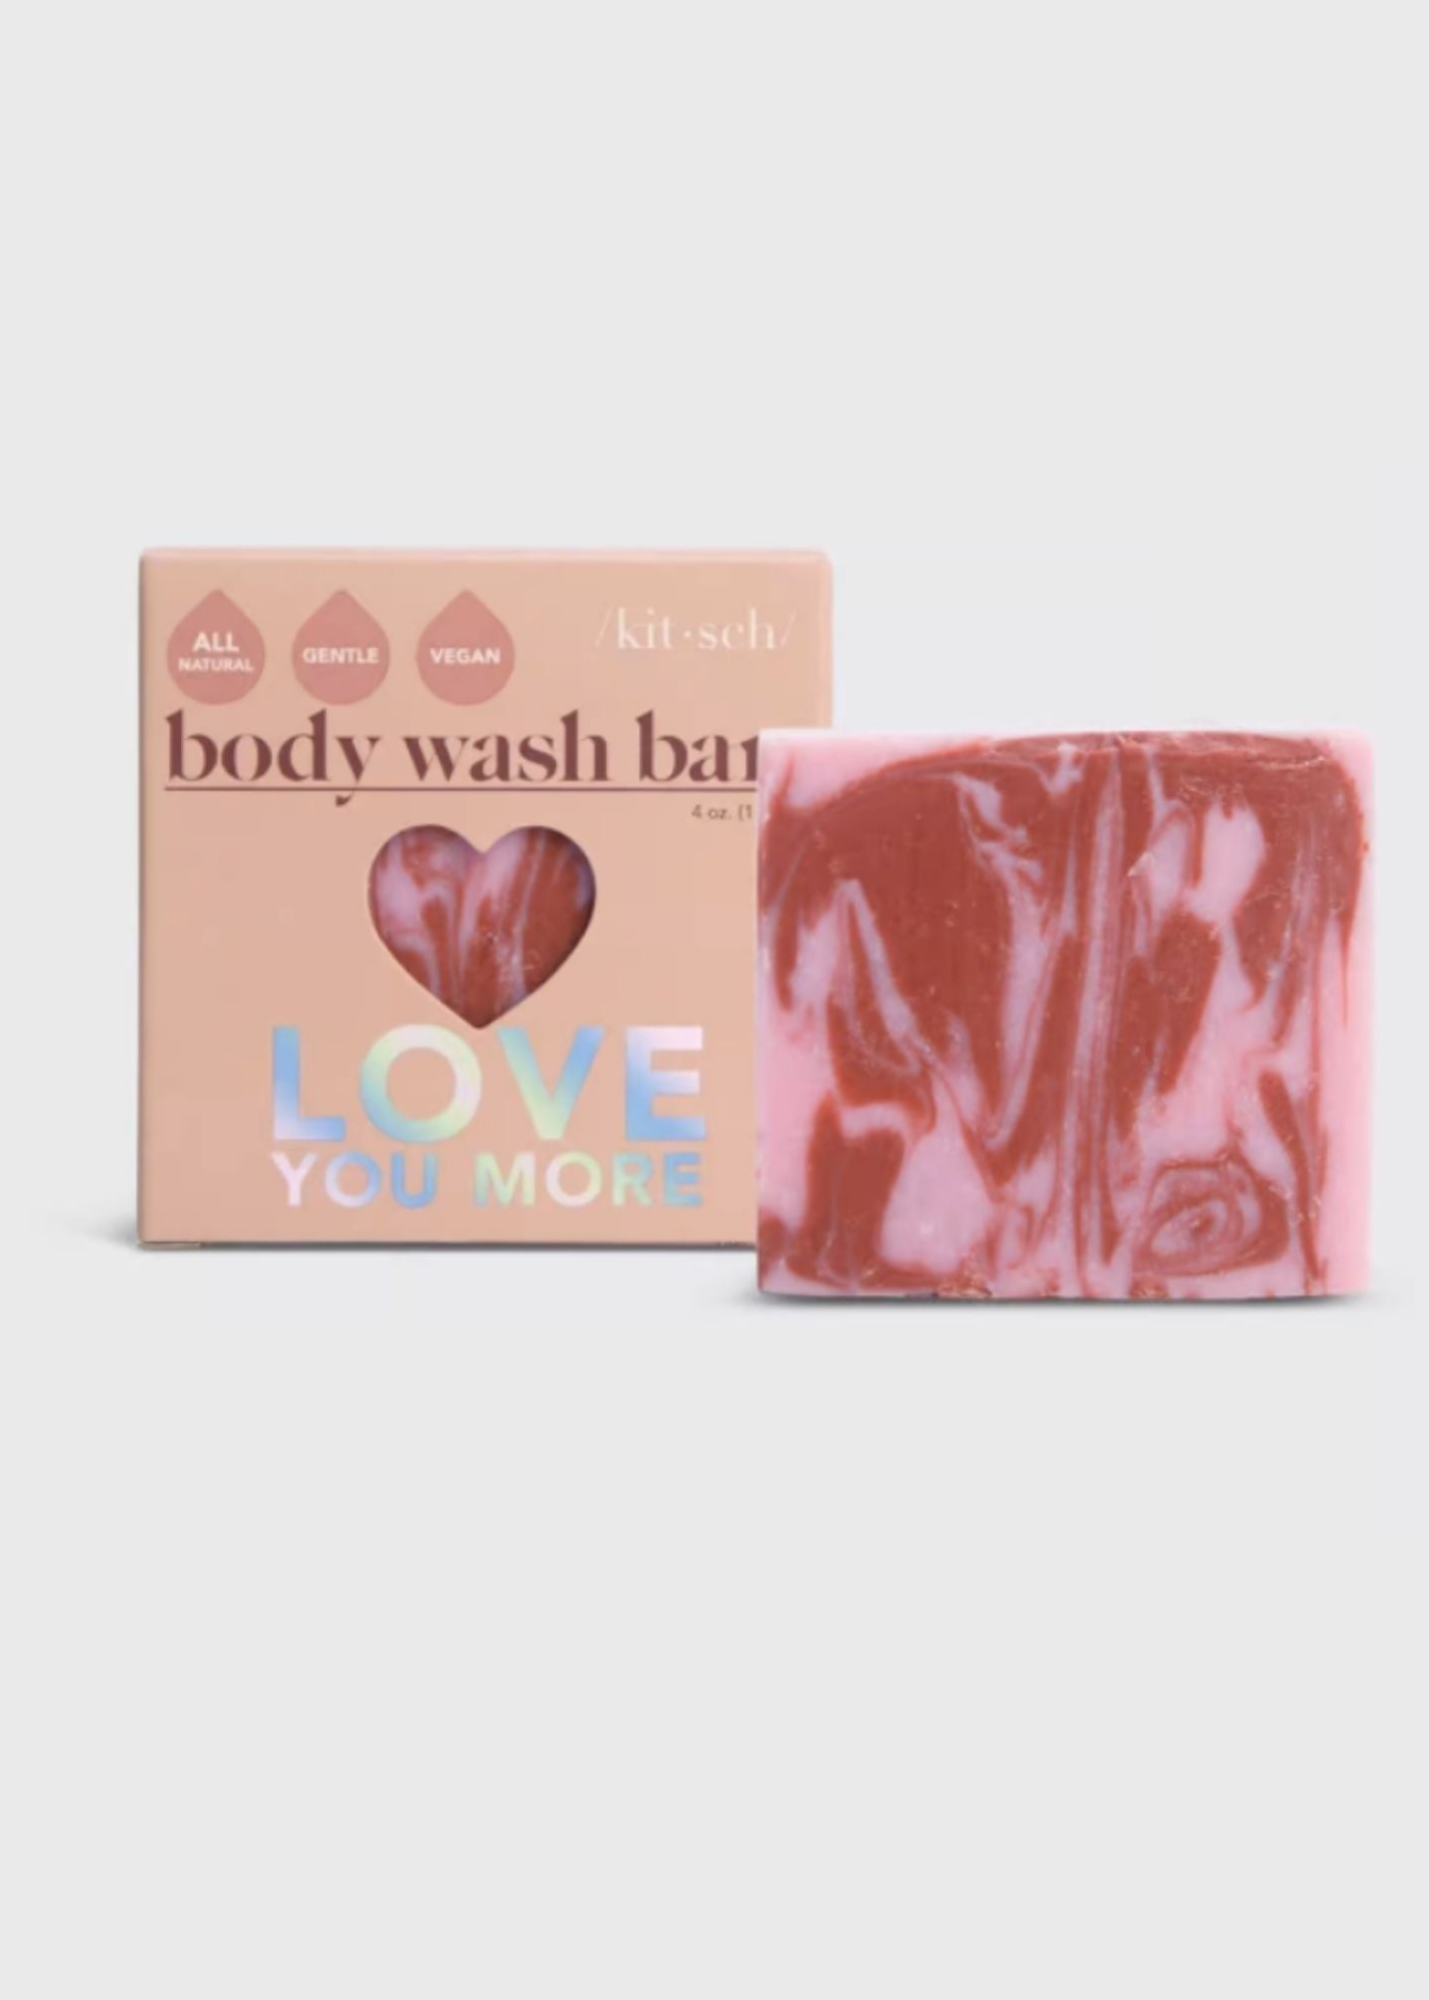 Rose Body Wash Bar Gifts